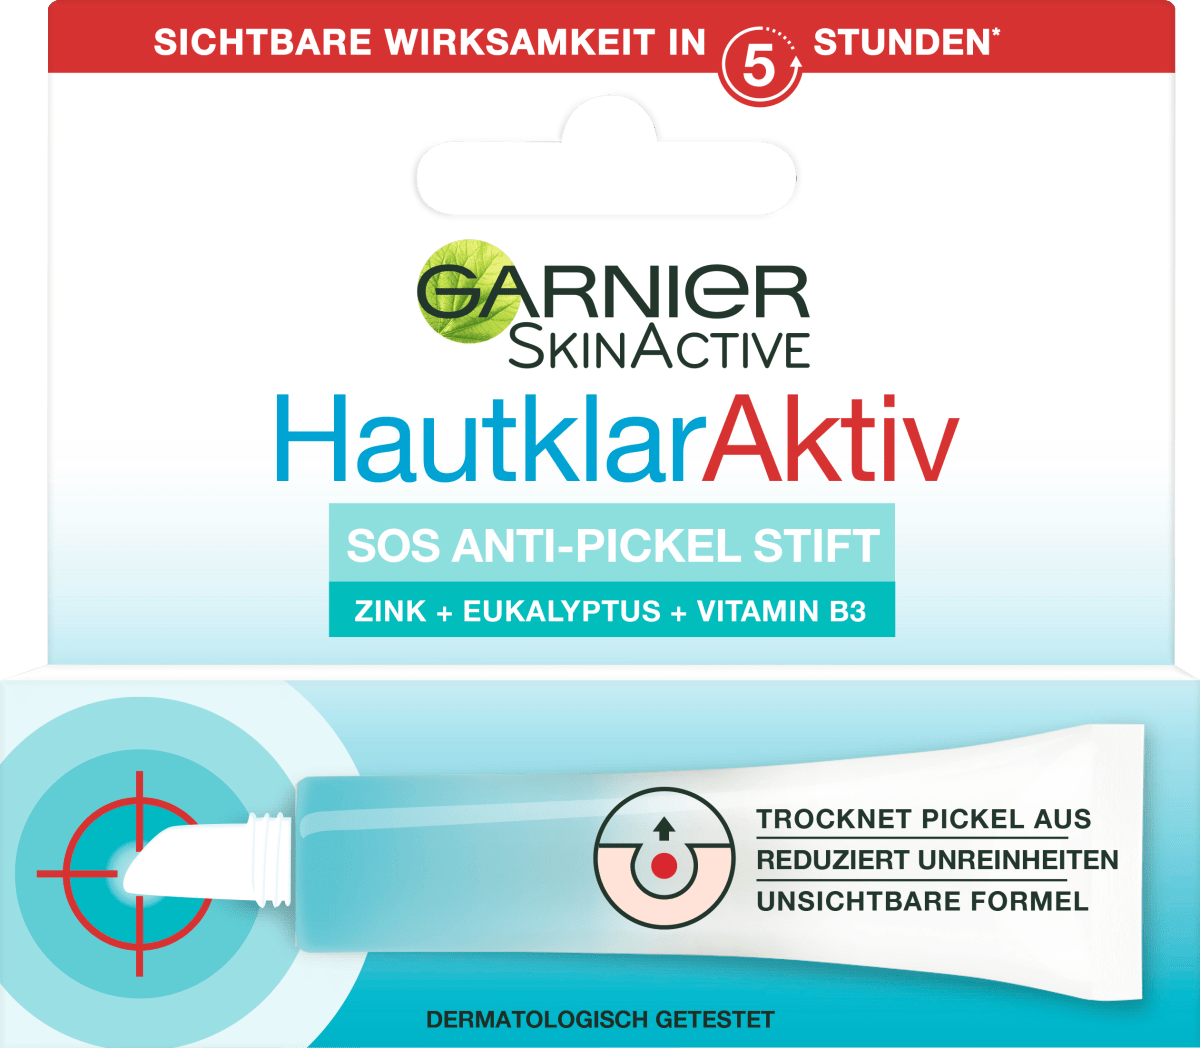 Garnier Skin Anti Active online Aktiv, 10 dauerhaft günstig kaufen SOS Stift Pickel ml Hautklar